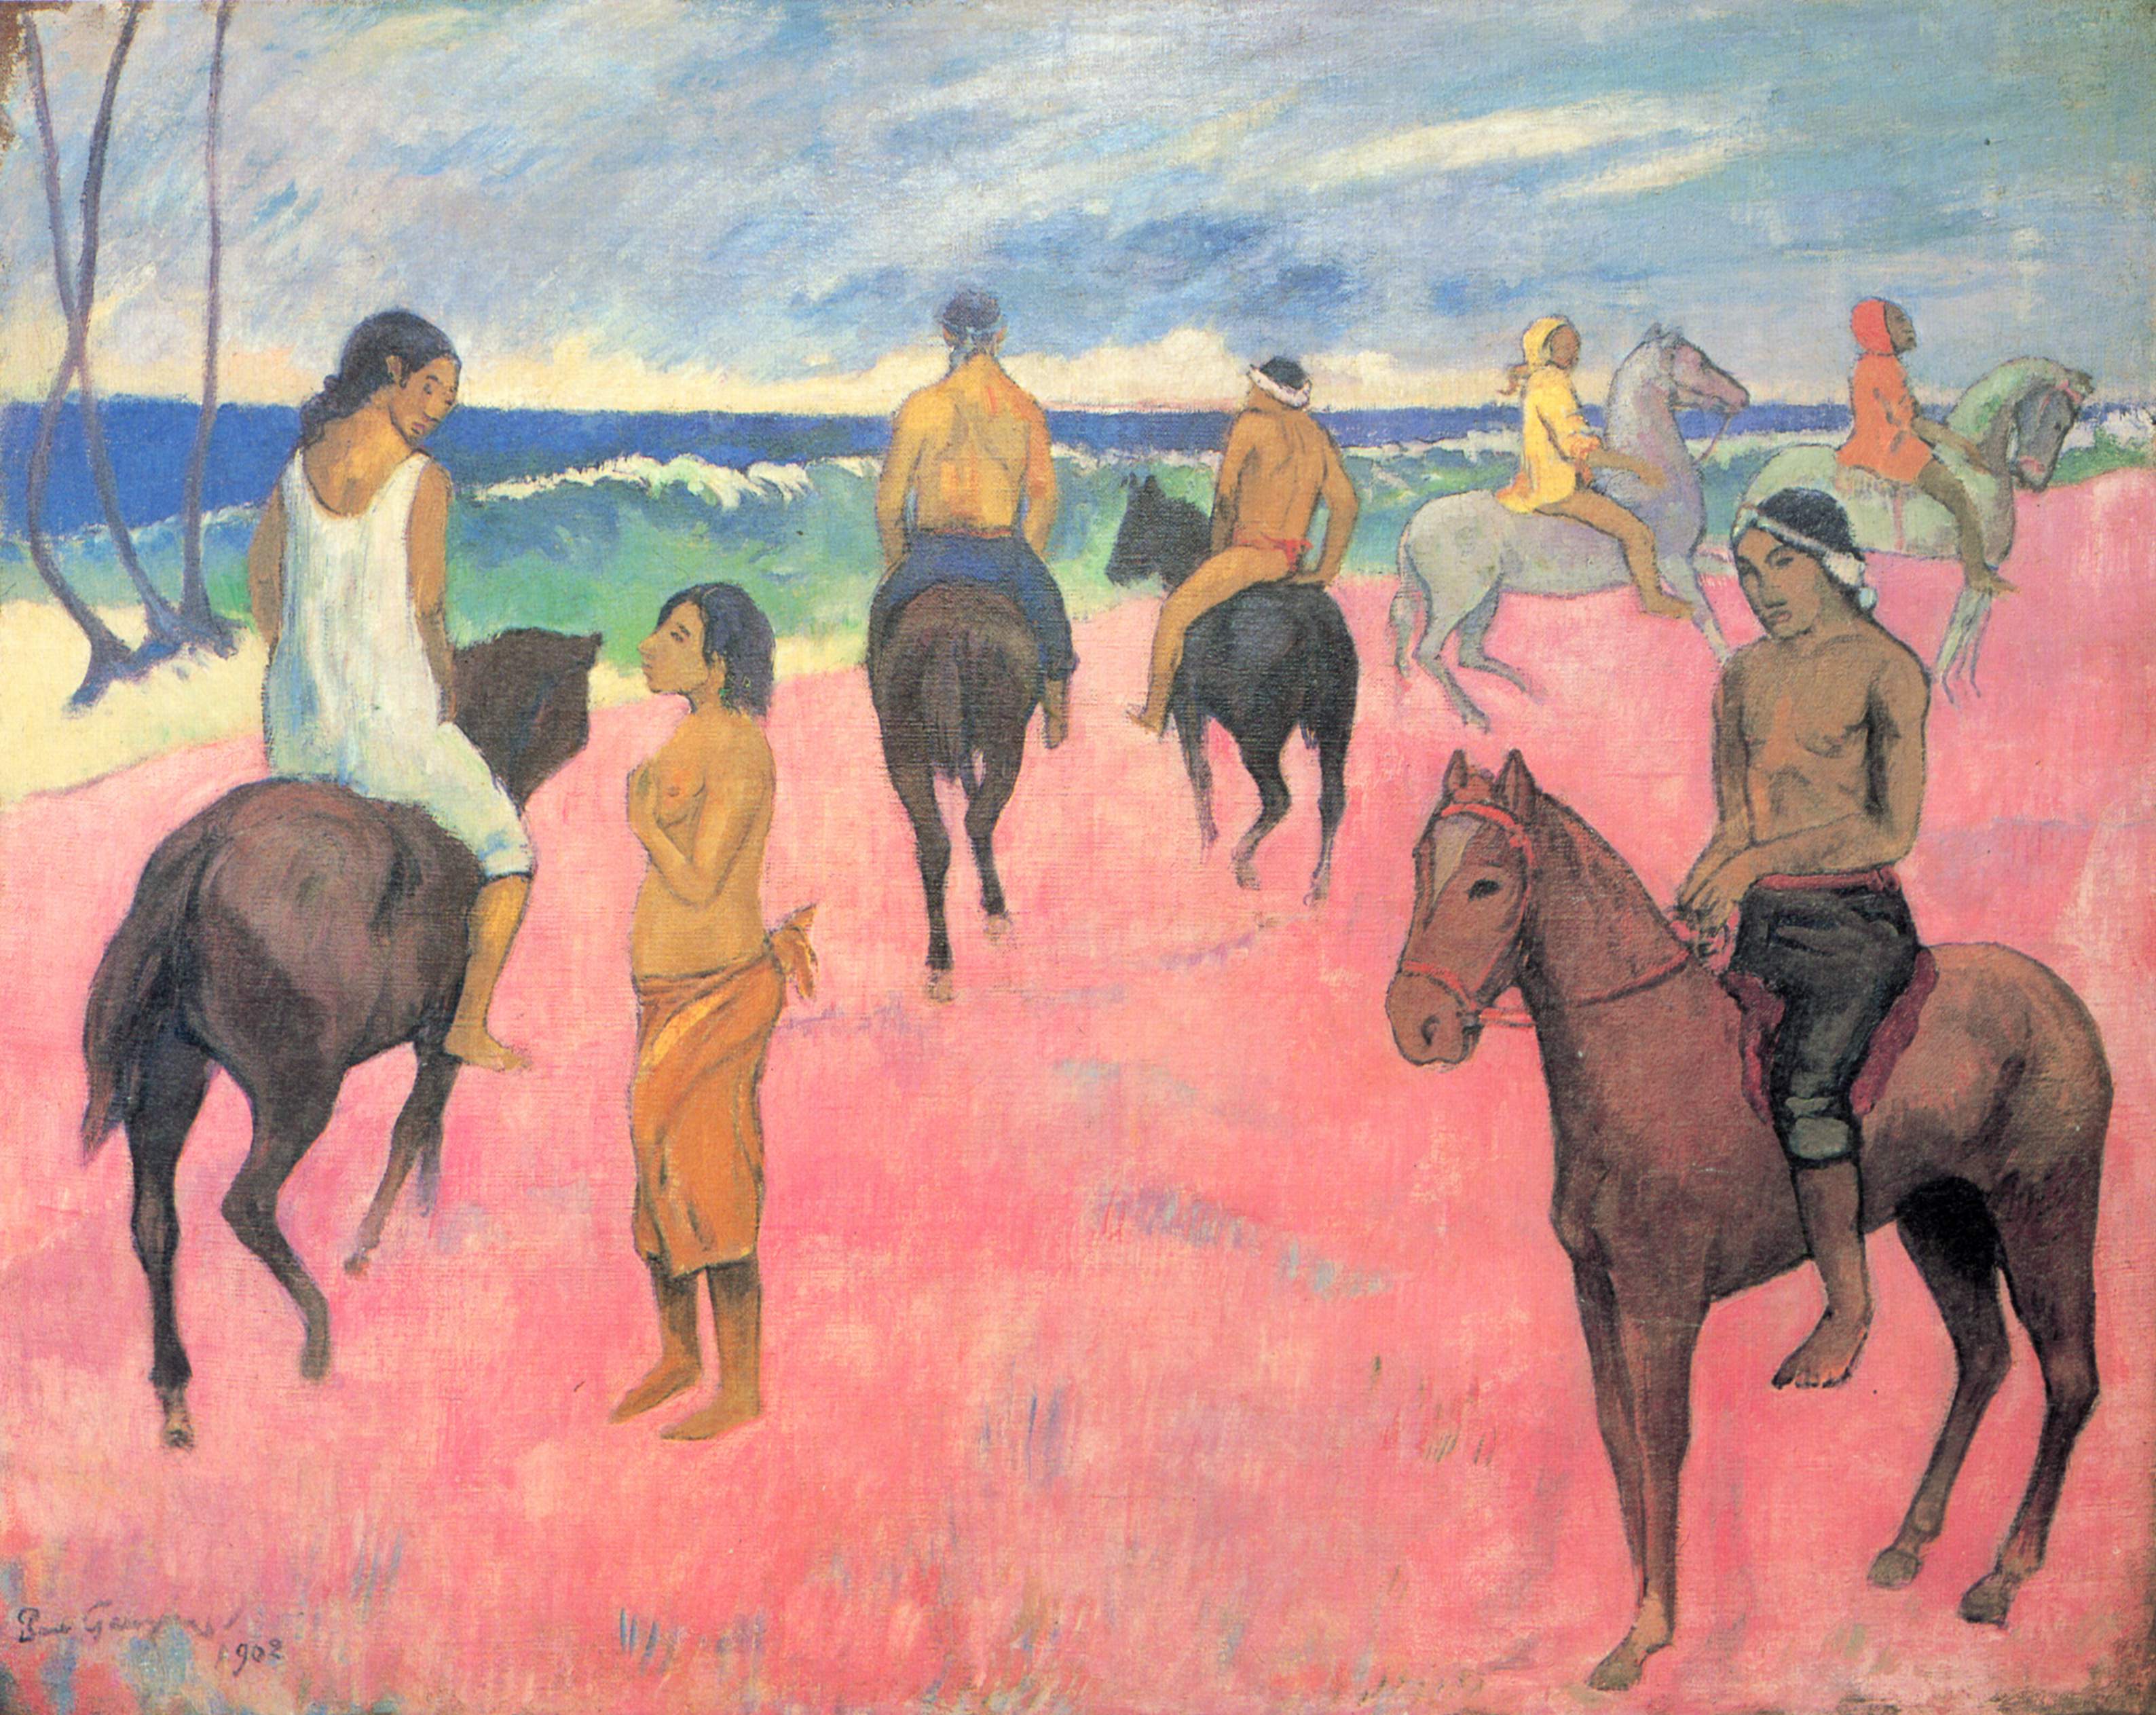 Cabalgantes en la playa by Paul Gauguin - 1902 - 73 x 92 cm Colección privada